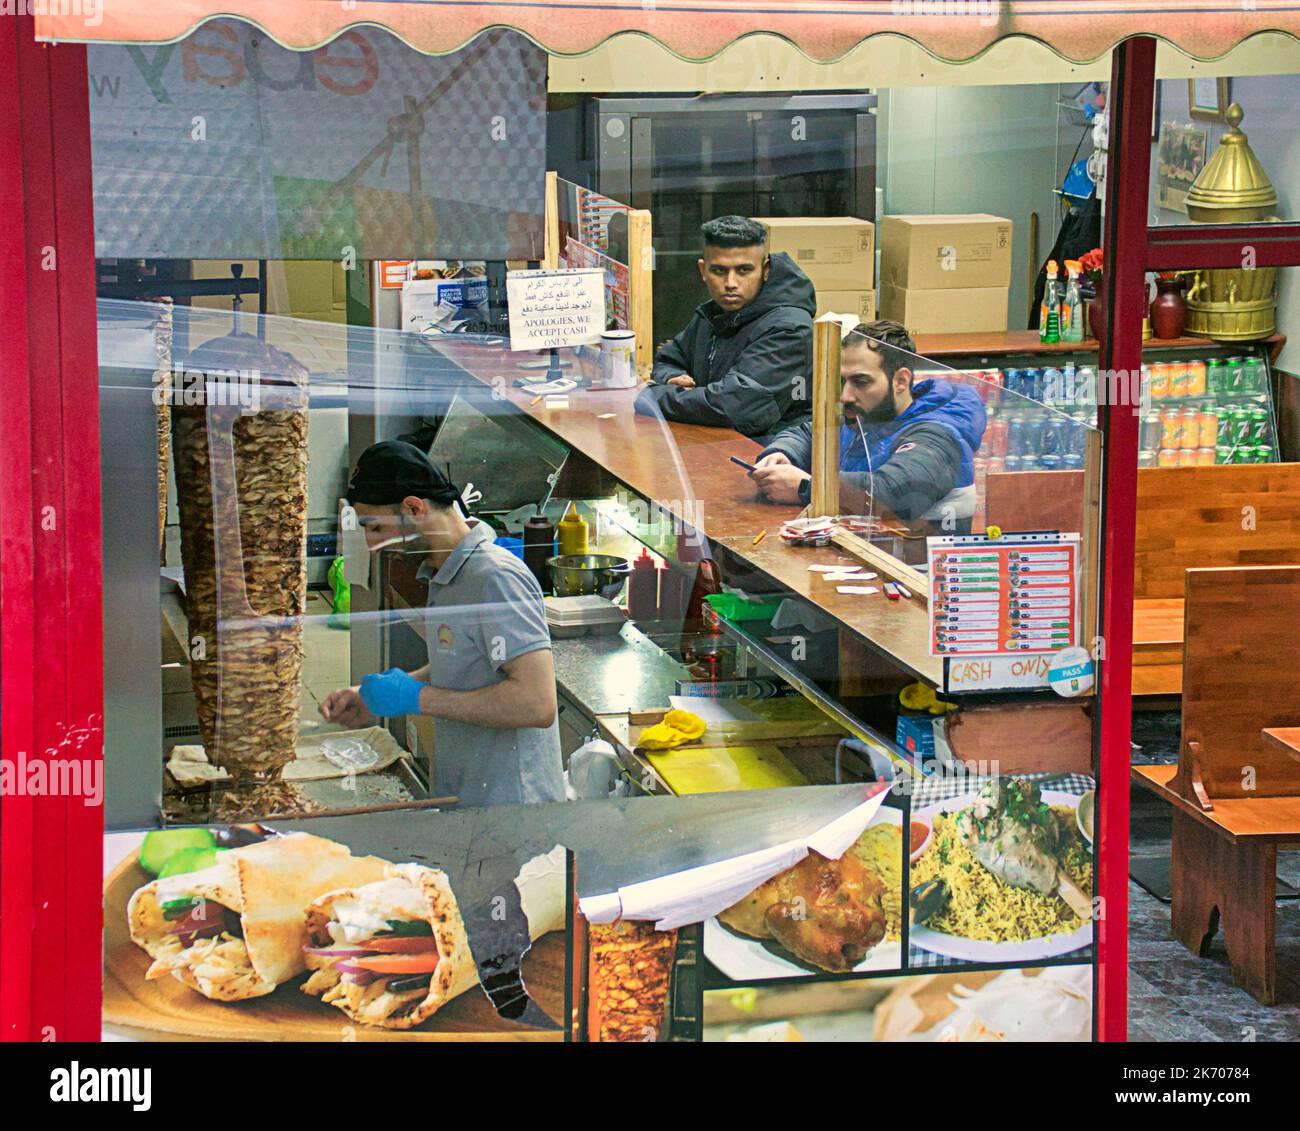 all'interno del kebab pizza take away fast food locale vista da una strada pubblica attraverso la finestra Foto Stock